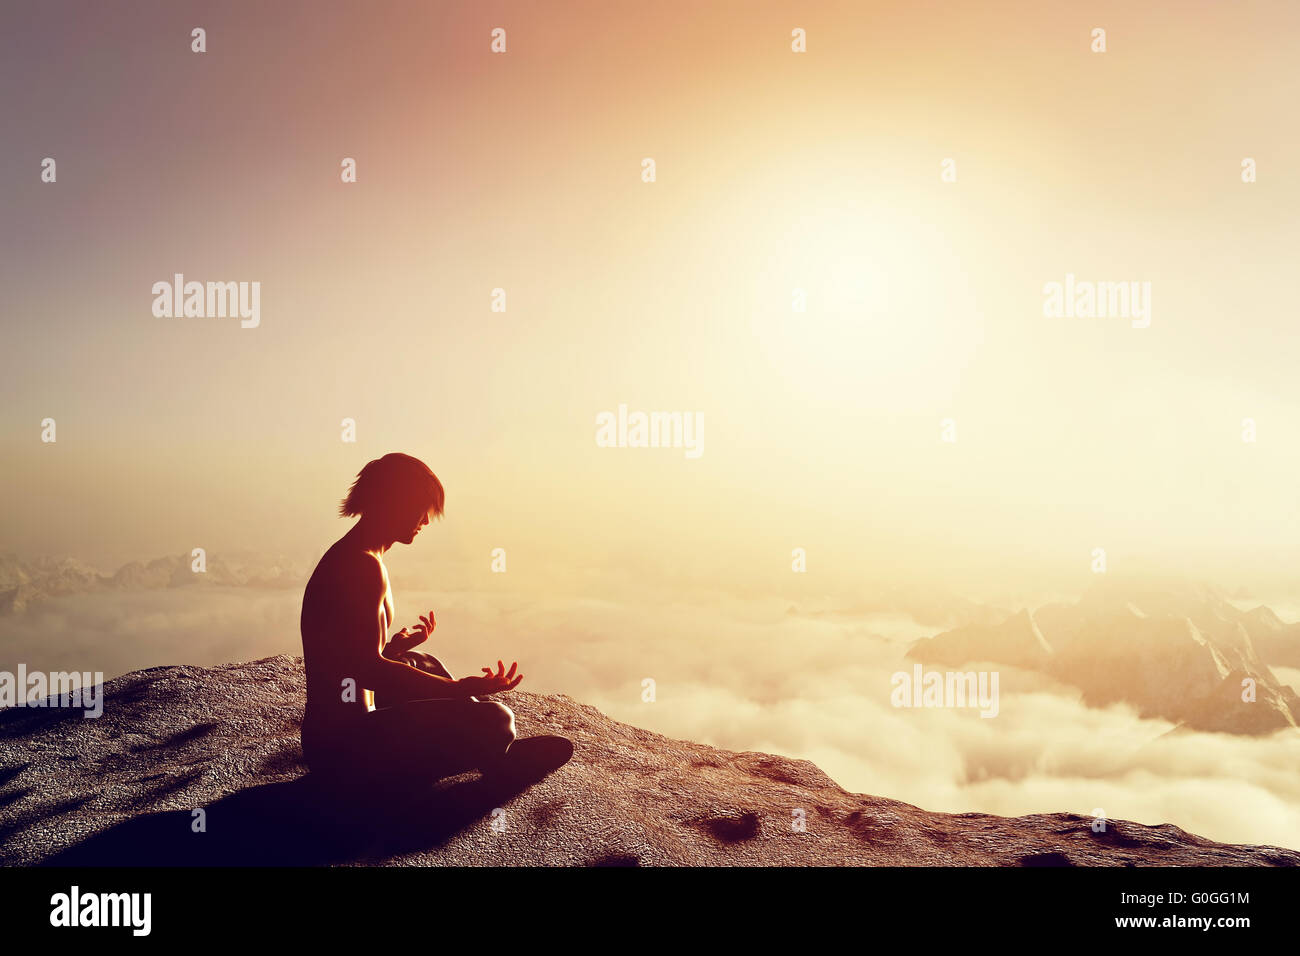 Asian man médite en position de yoga en haute montagne au-dessus des nuages au coucher du soleil. Concept unique de méditation Banque D'Images